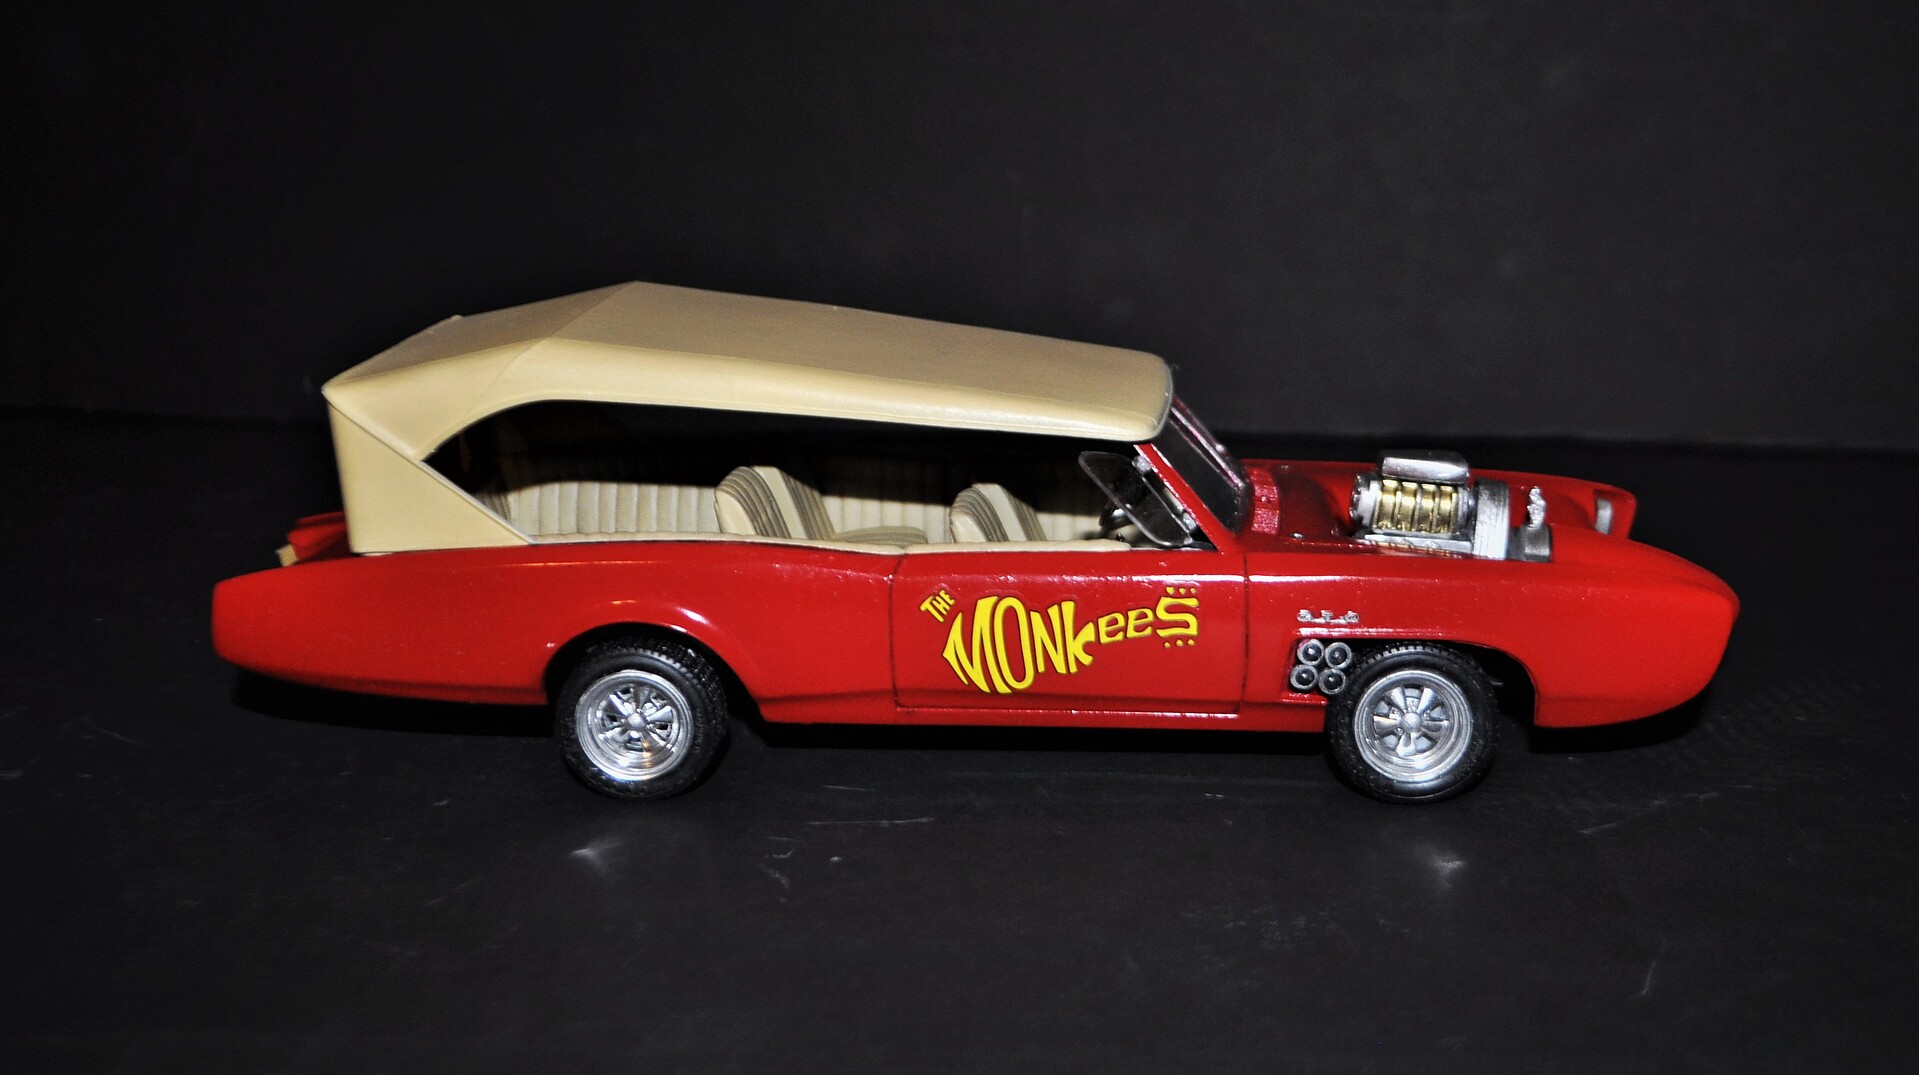 MPC Skill 2 Model Kit Monkeemobile The Monkees 1966-1968 TV Series 1-25 Scale Model Car